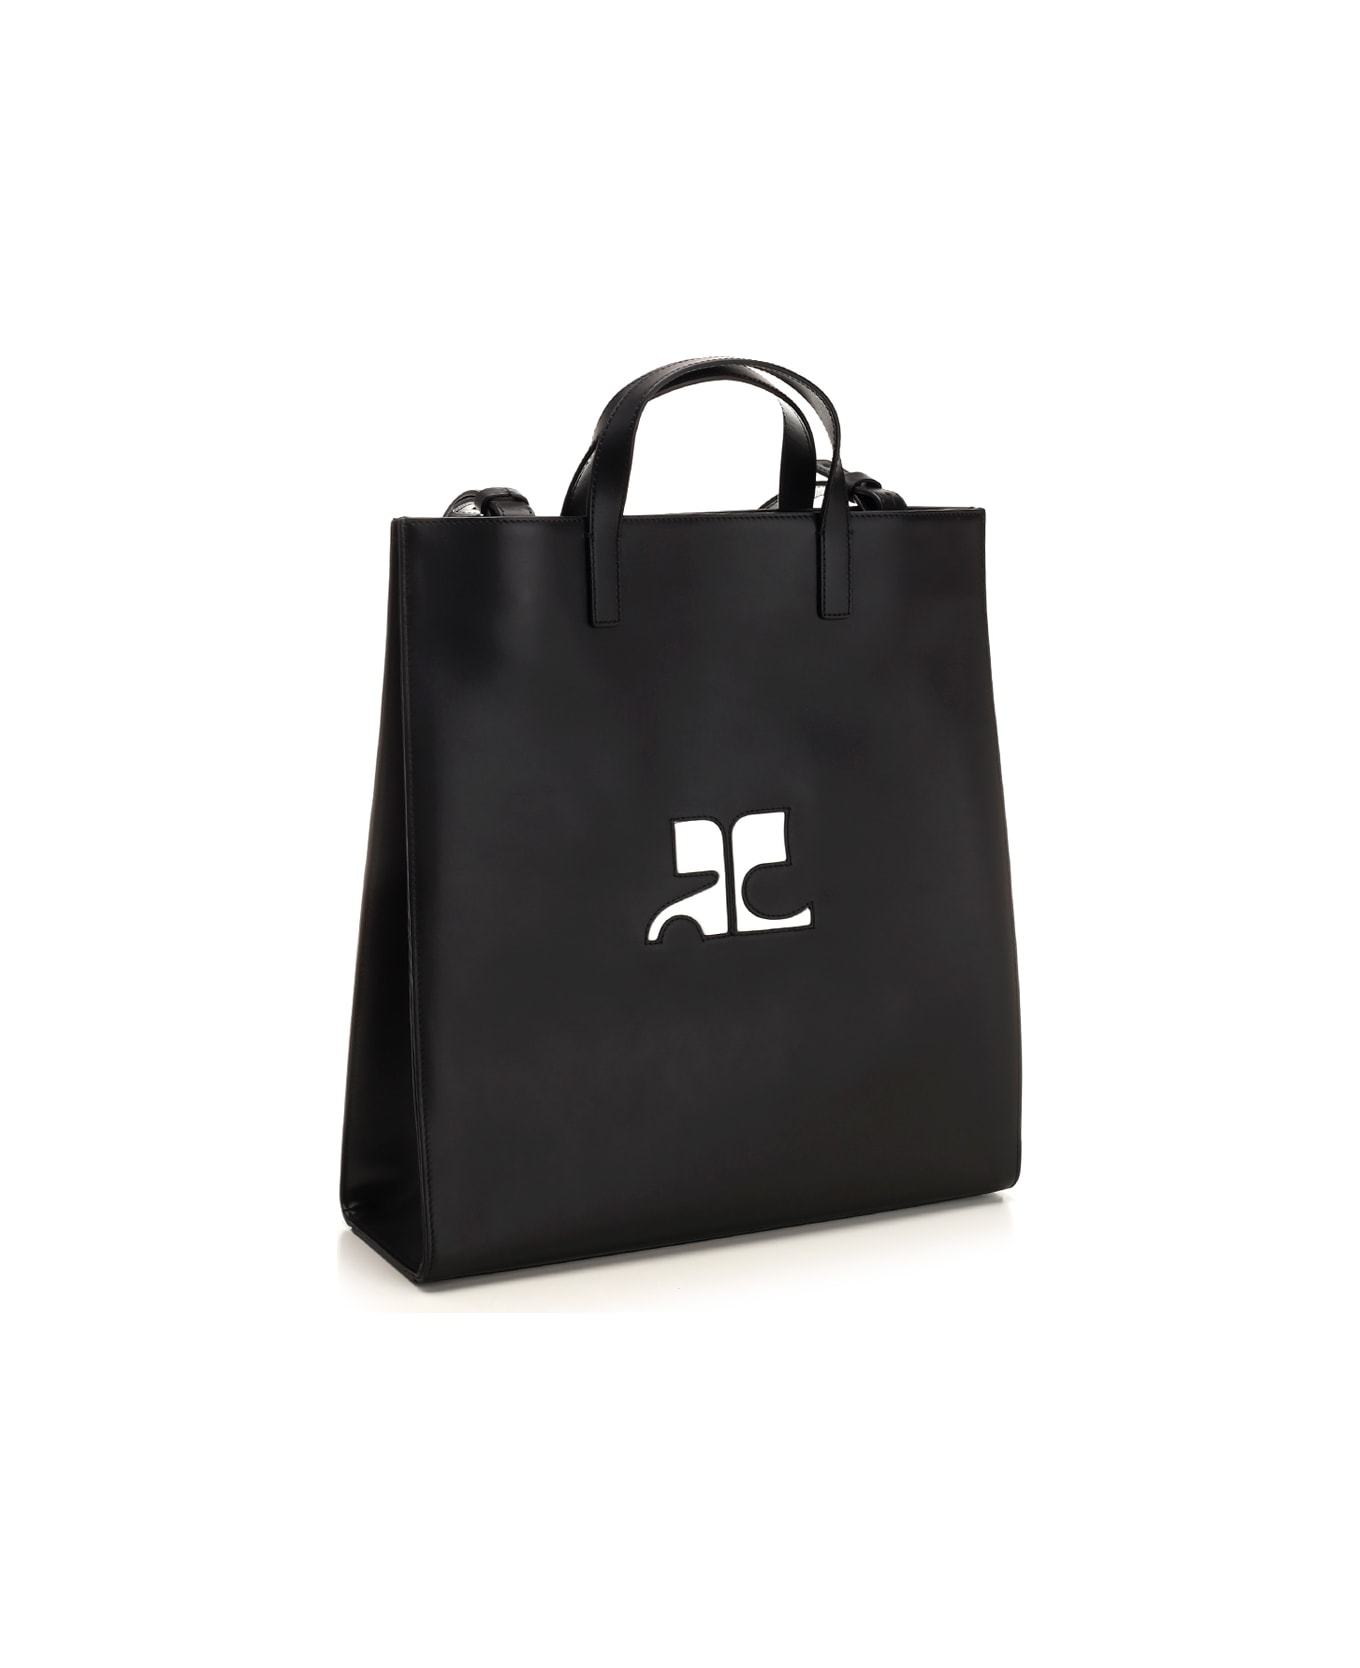 Courrèges 'heritage Tote' Bag In Black Calfskin - BLACK トートバッグ